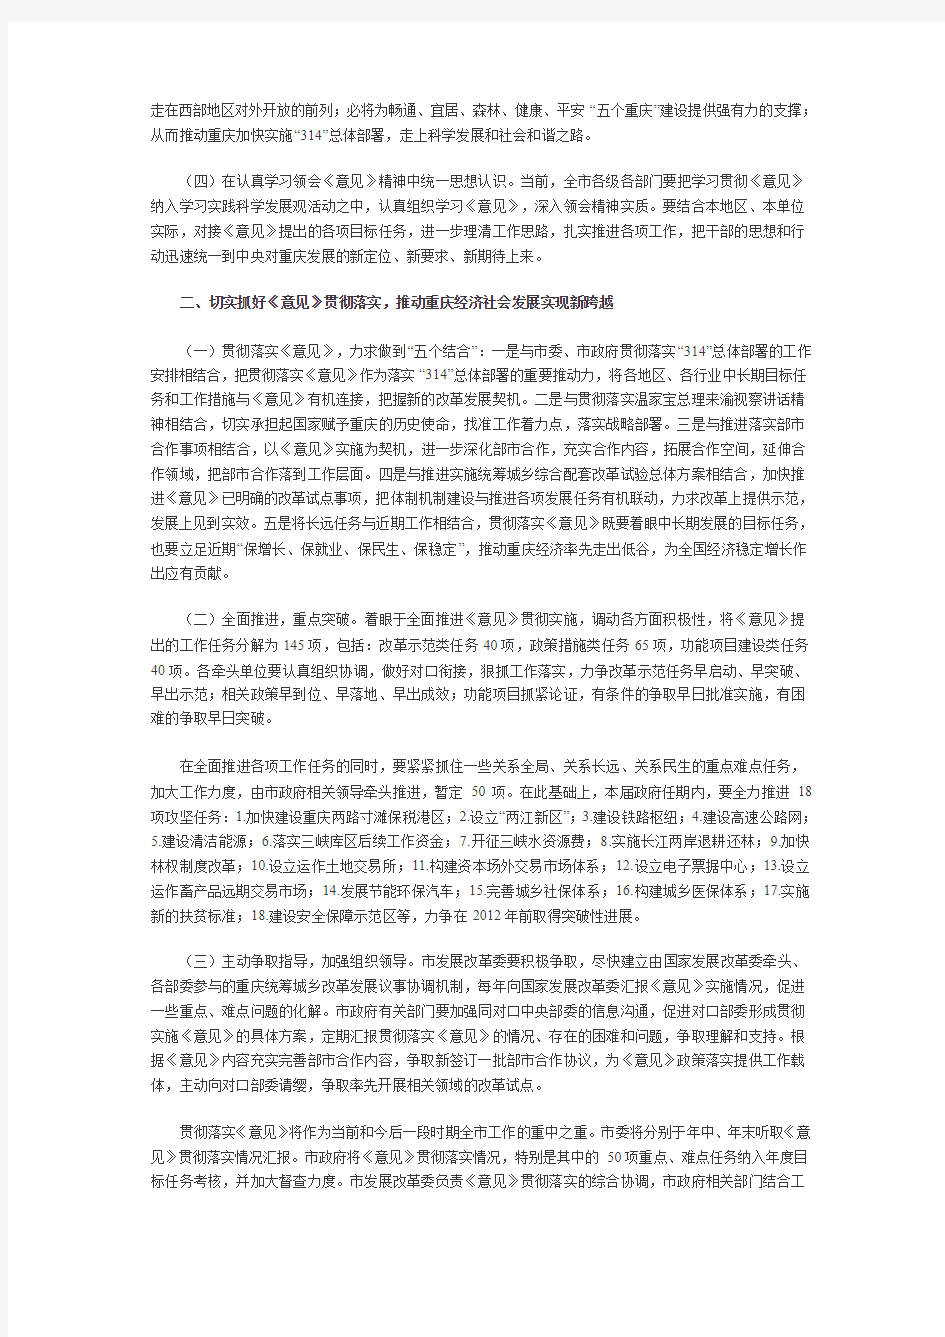 重庆市人民政府贯彻落实推进重庆市统筹城乡改革和发展的若干意见